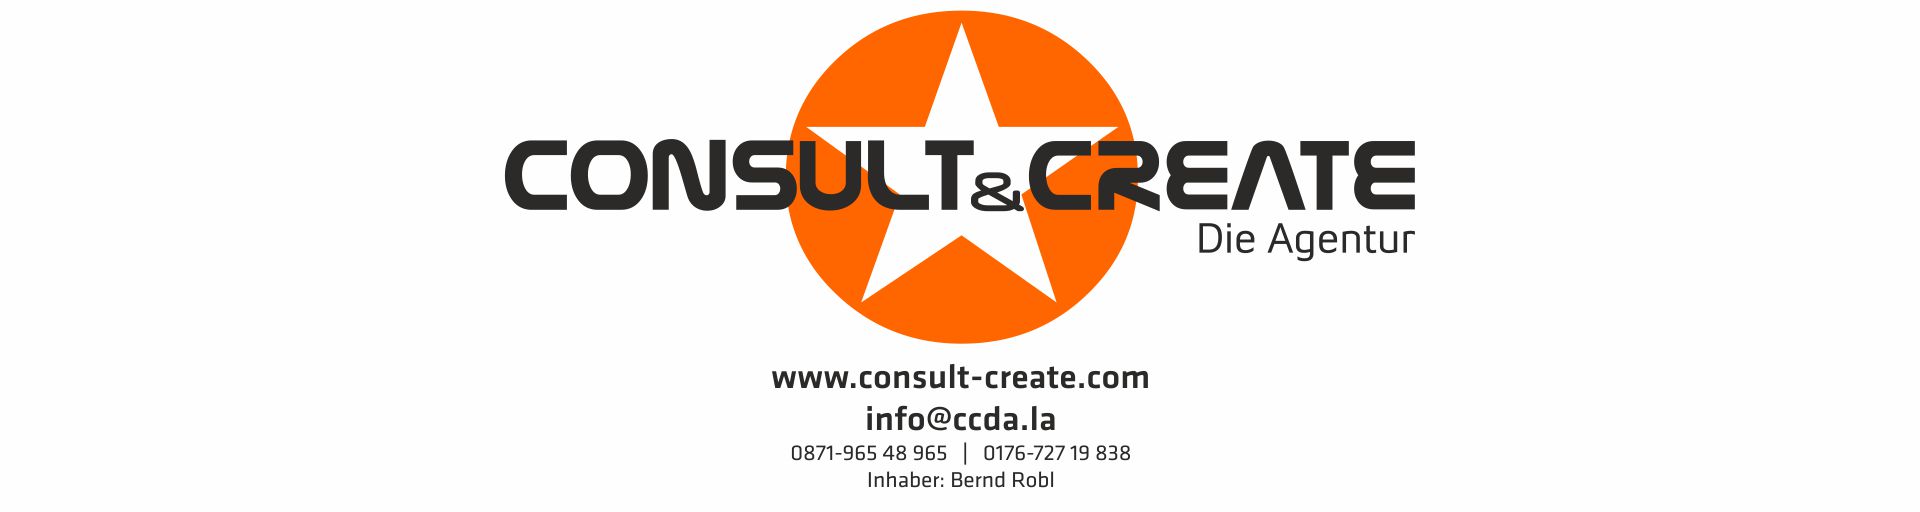 Consult & Create - Die Agentur